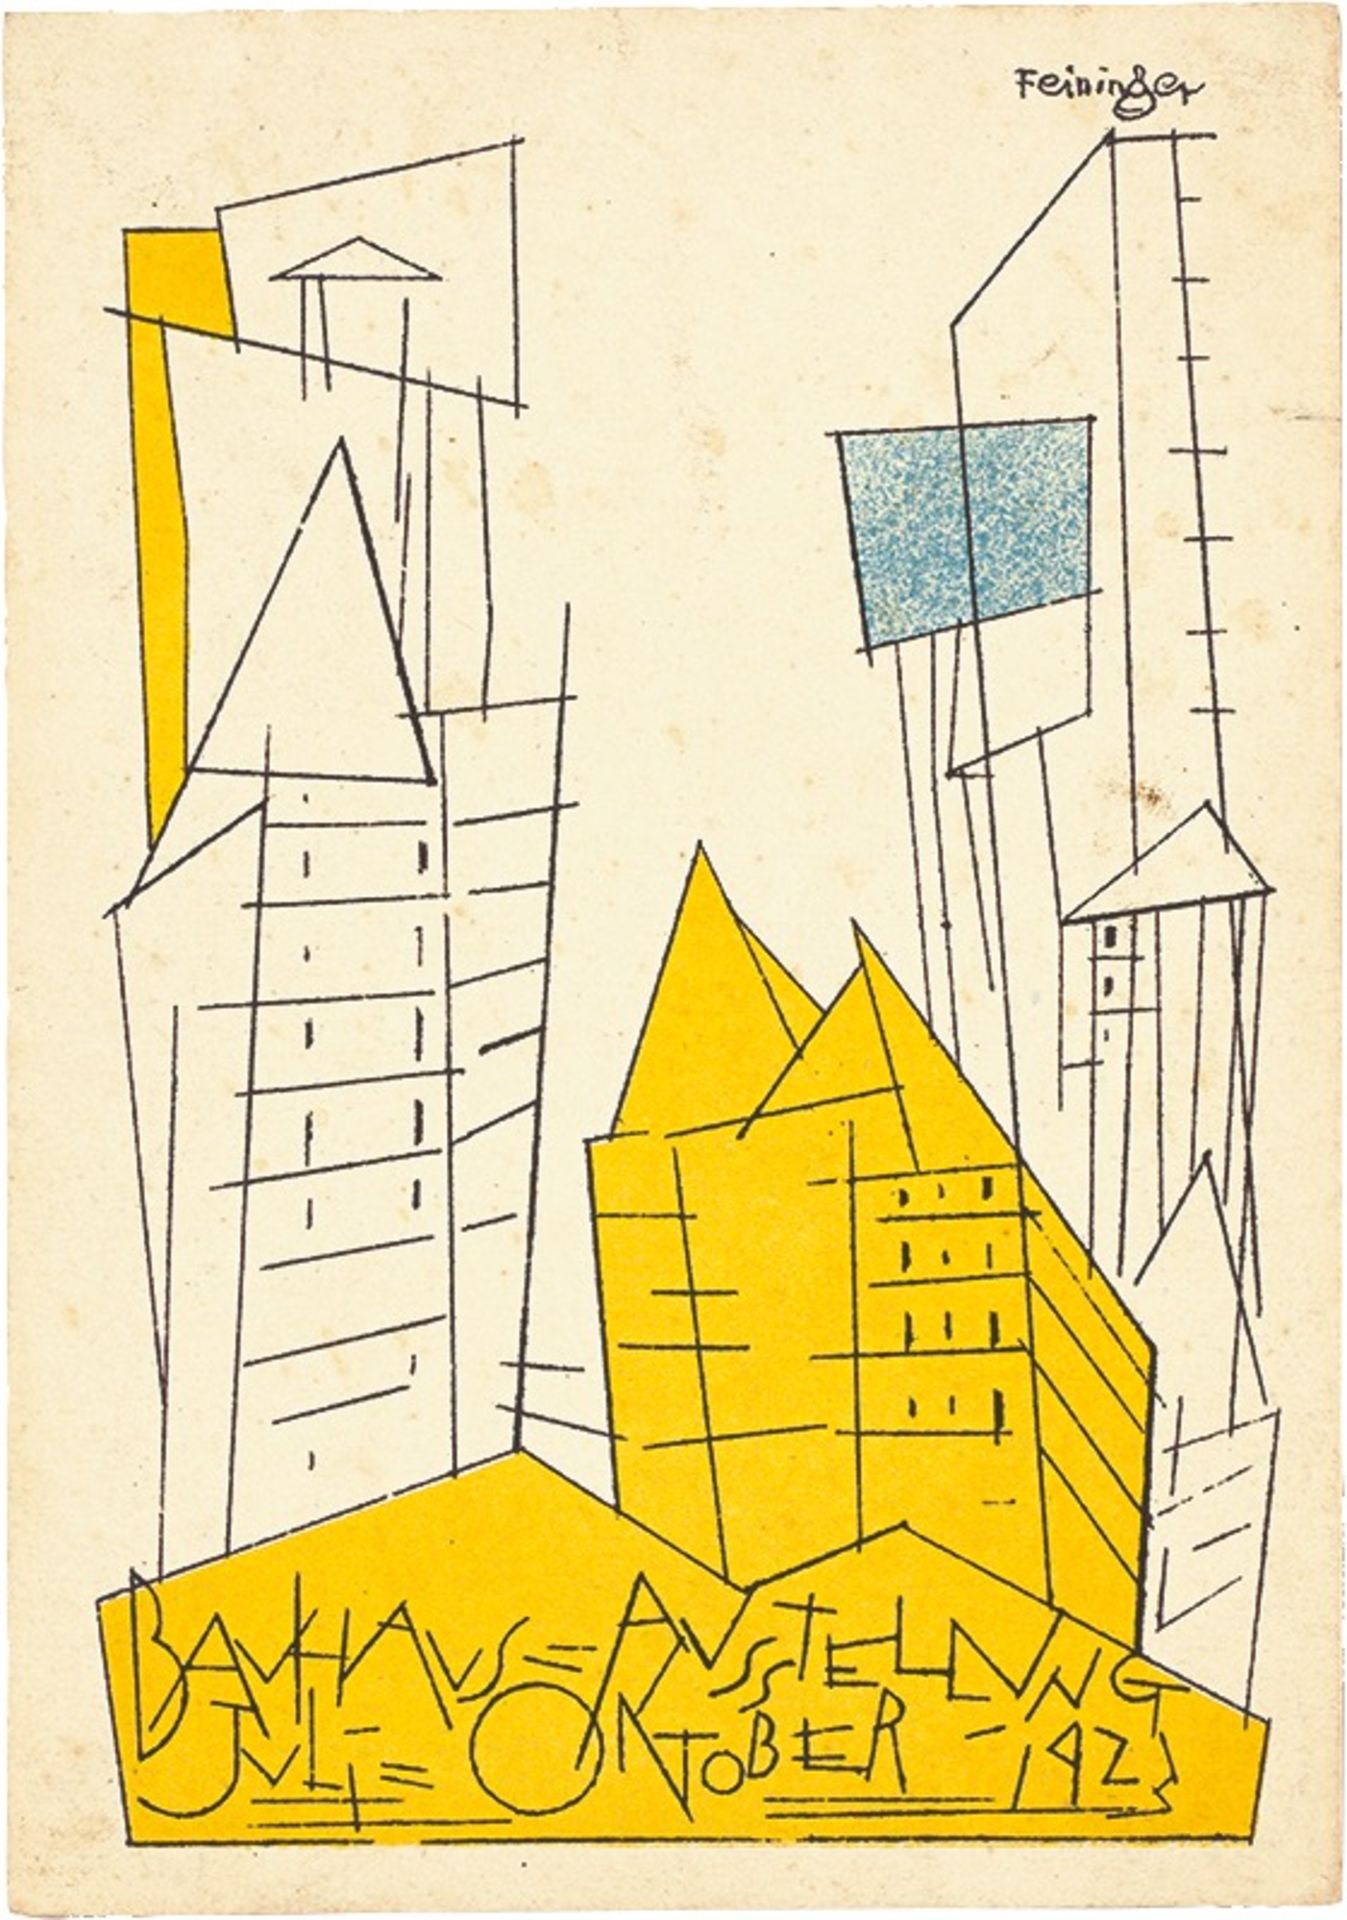 Bauhaus. ”Ausstellung Weimar 1923” – 20 postcards by various Bauhaus artists. 1923